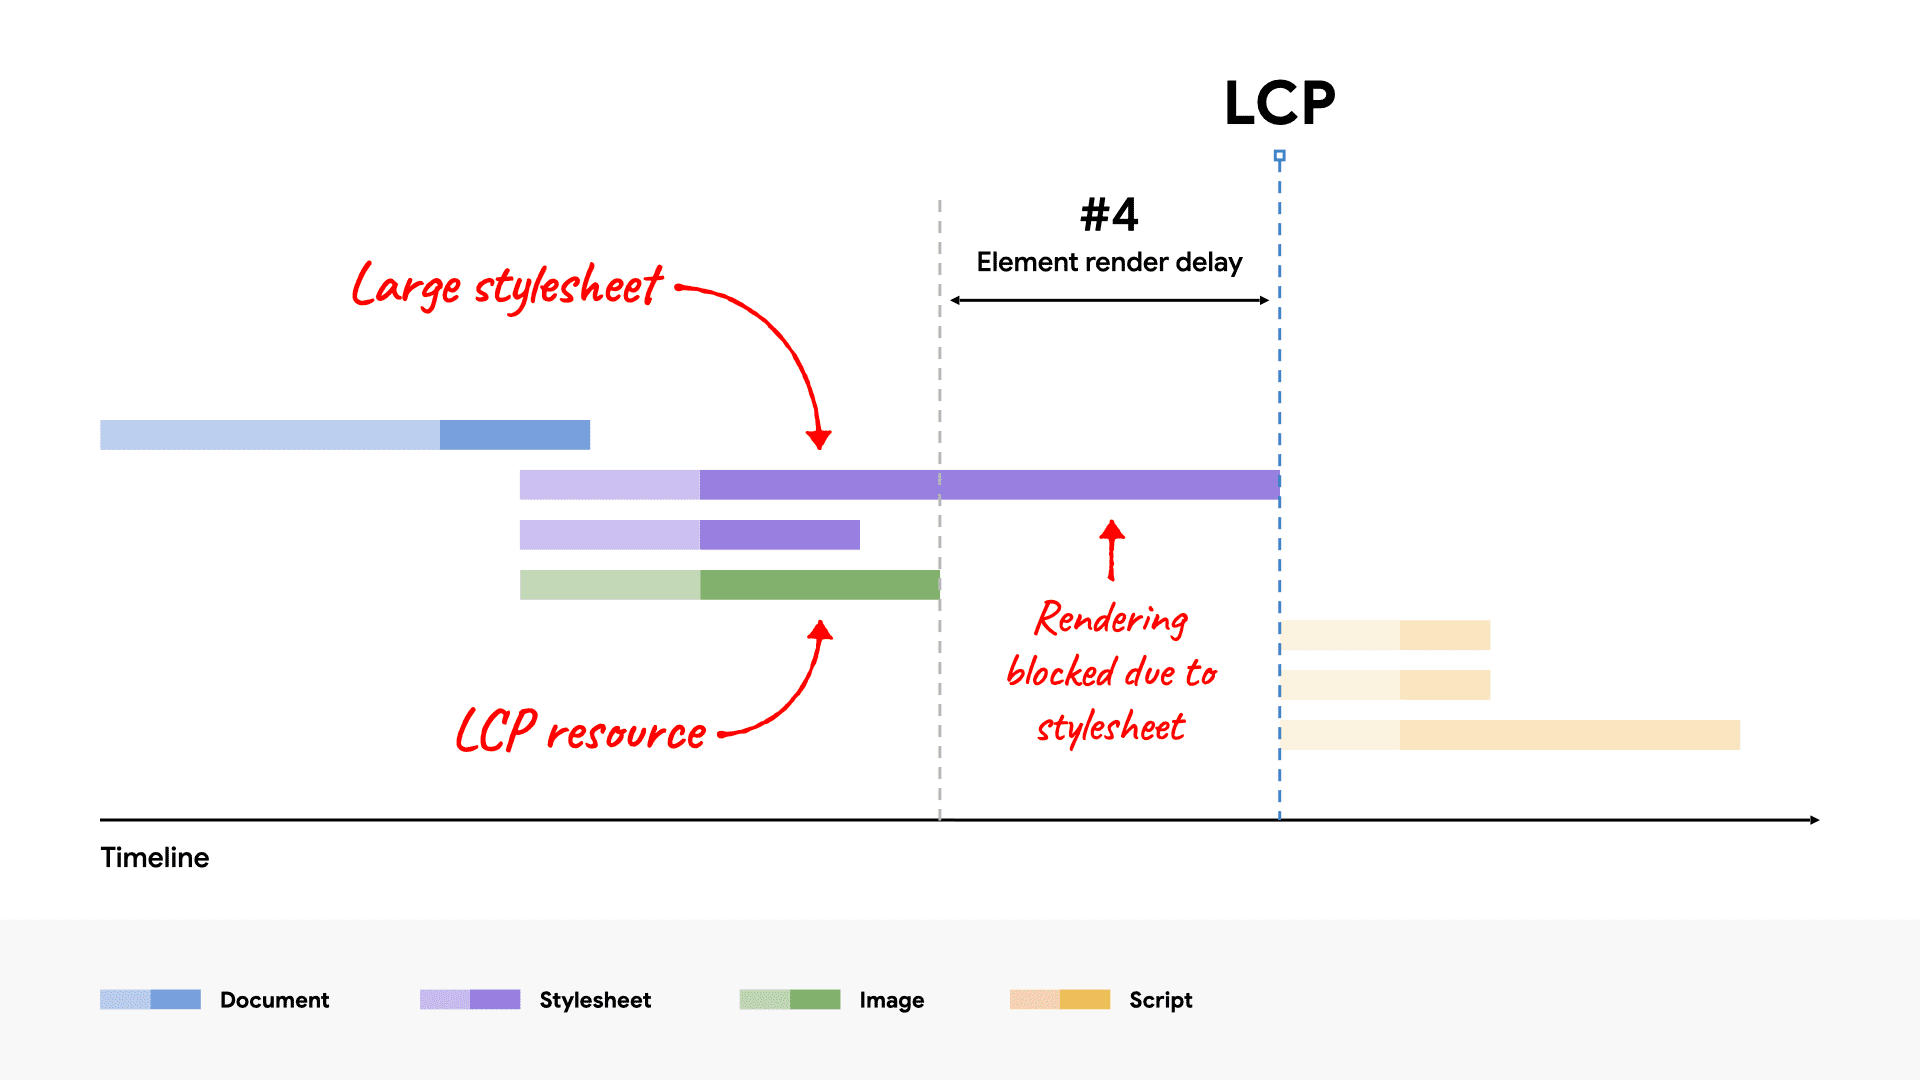 แผนภาพ Waterfall เครือข่ายแสดงการแสดงผลการบล็อกไฟล์ CSS ขนาดใหญ่ขององค์ประกอบ LCP เนื่องจากใช้เวลาโหลดนานกว่าทรัพยากร LCP